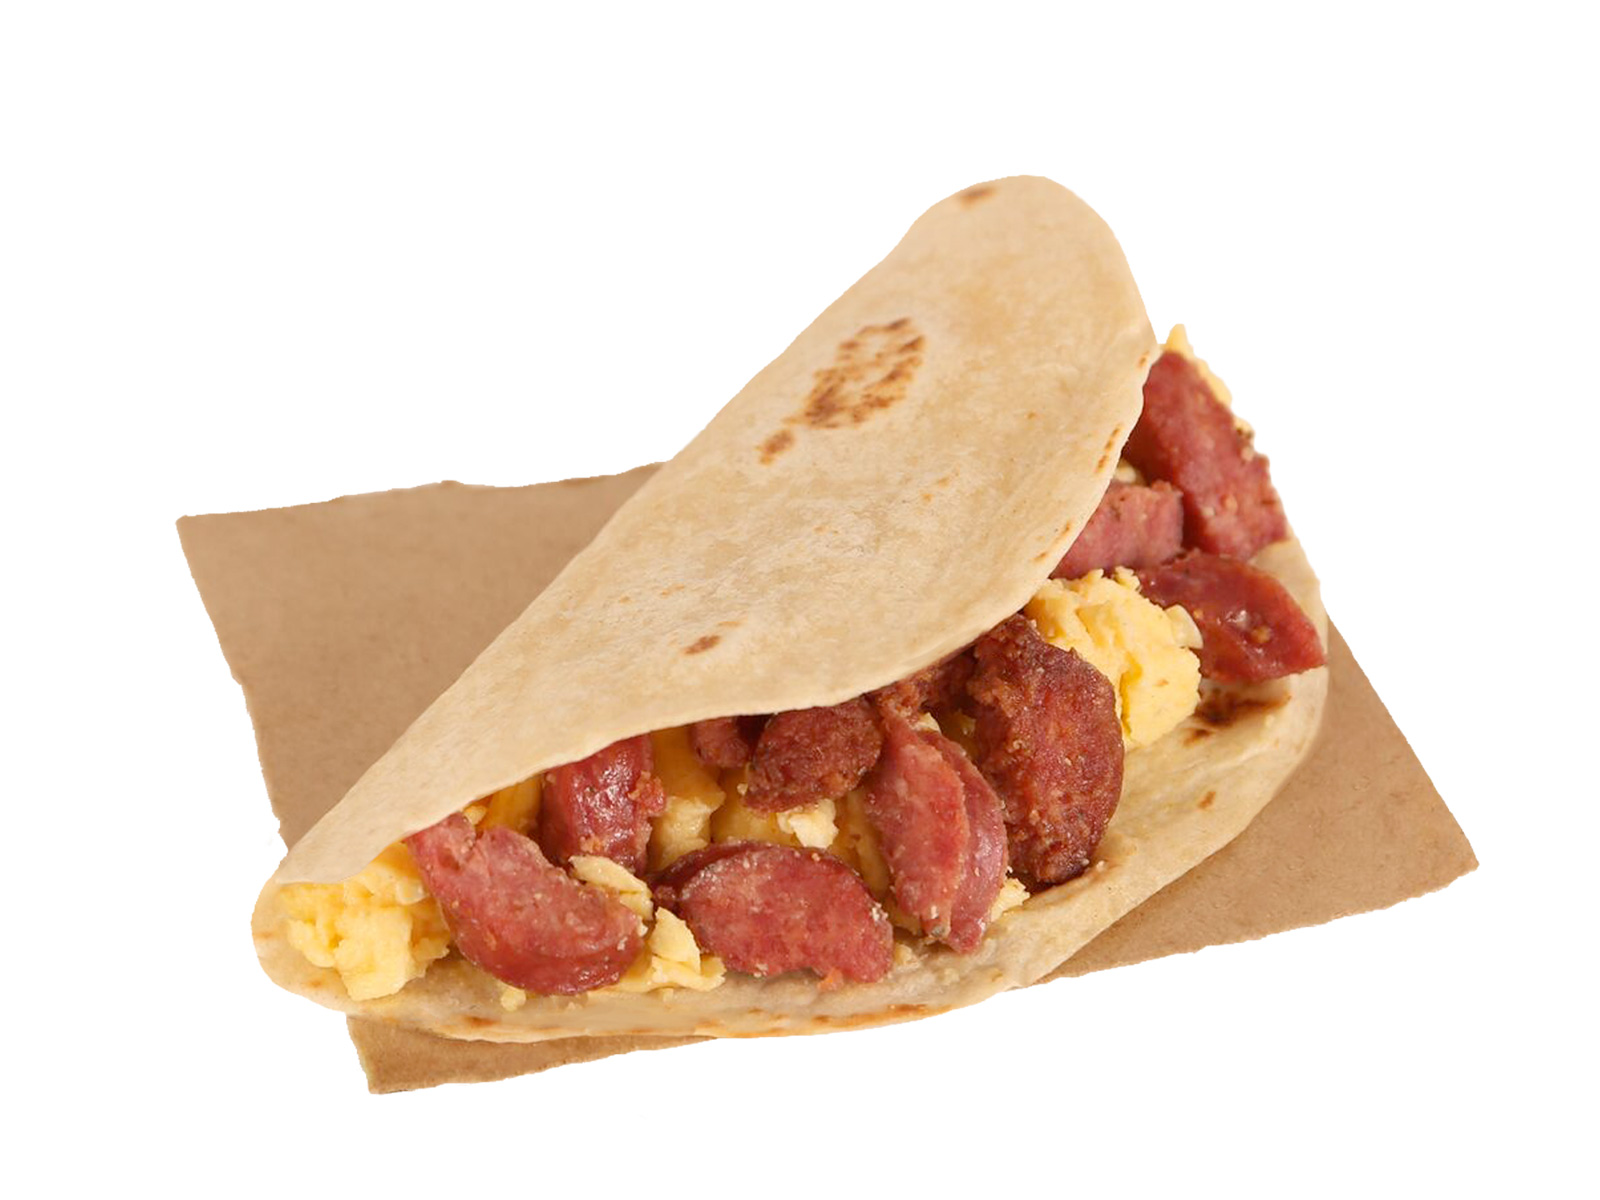 Sausage and Egg Taco